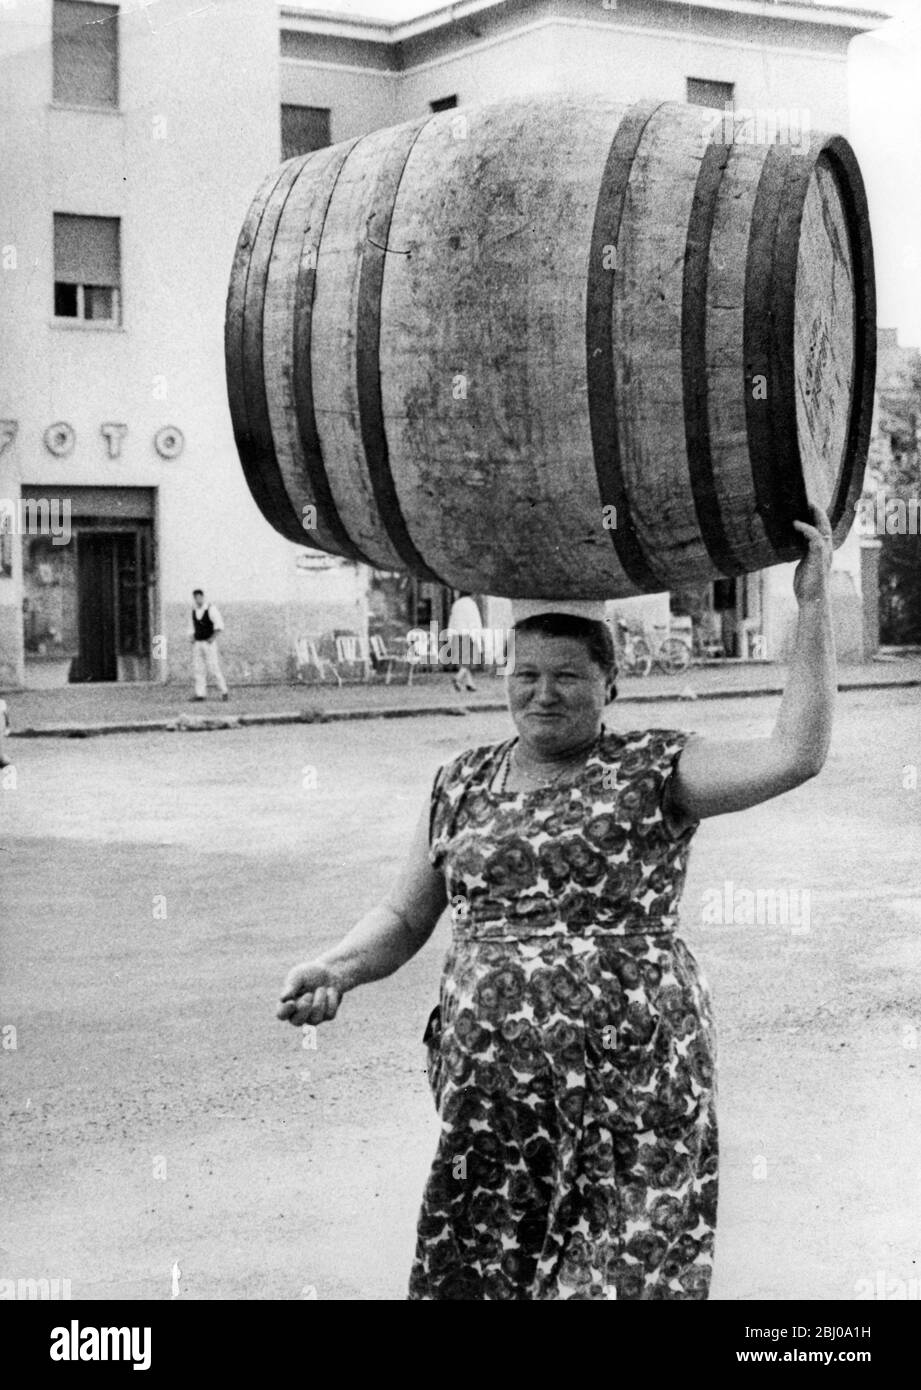 Un carico sulla sua mente - una donna di Marino, vicino a Roma, Italia, porta un barile sulla testa nel modo tradizionale - - 26 novembre 1960 Foto Stock